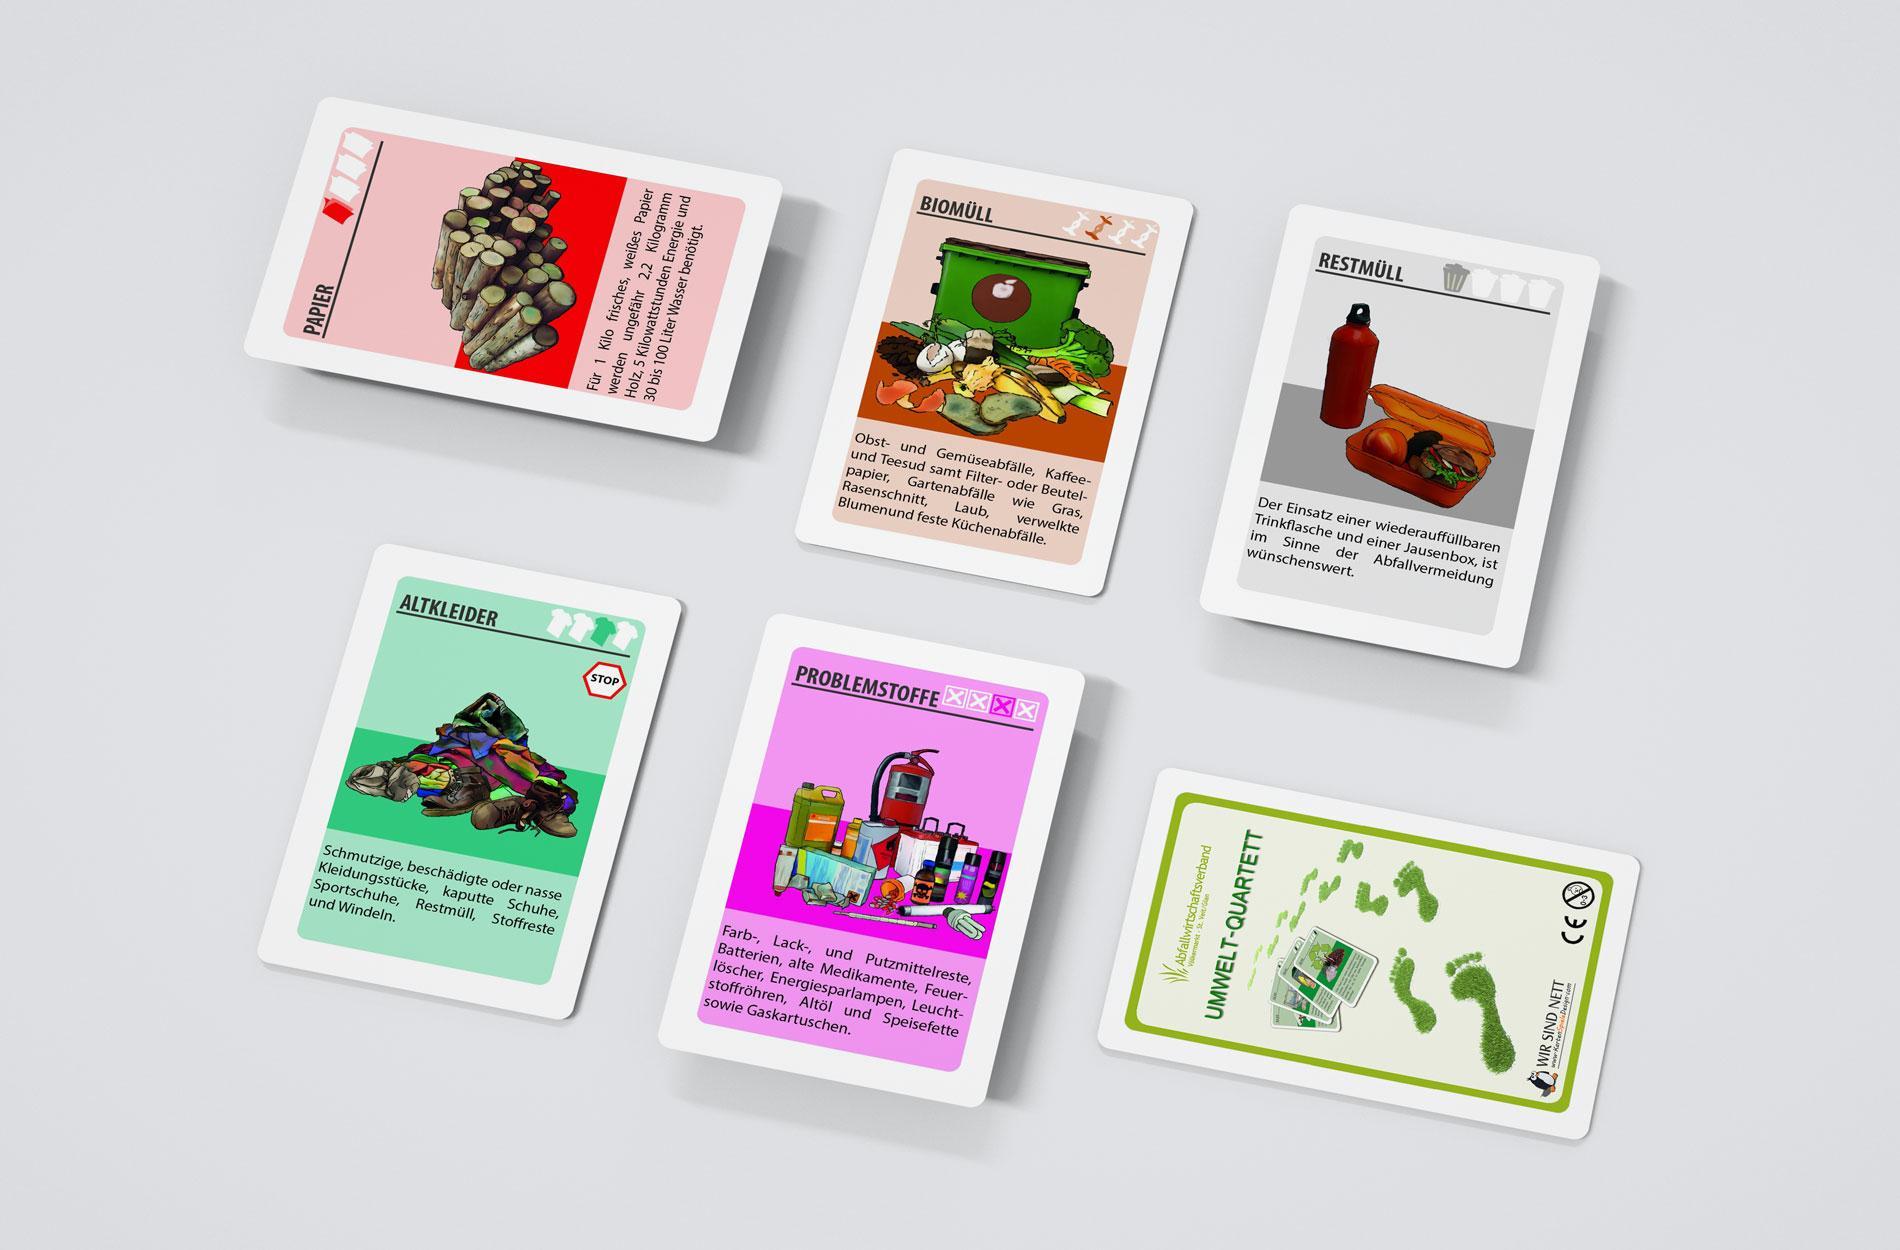 Umweltquartett - Kartenspiel - Müllvermeidung, Wertstofftrennung, Recycling, Kreislaufwirtschaft